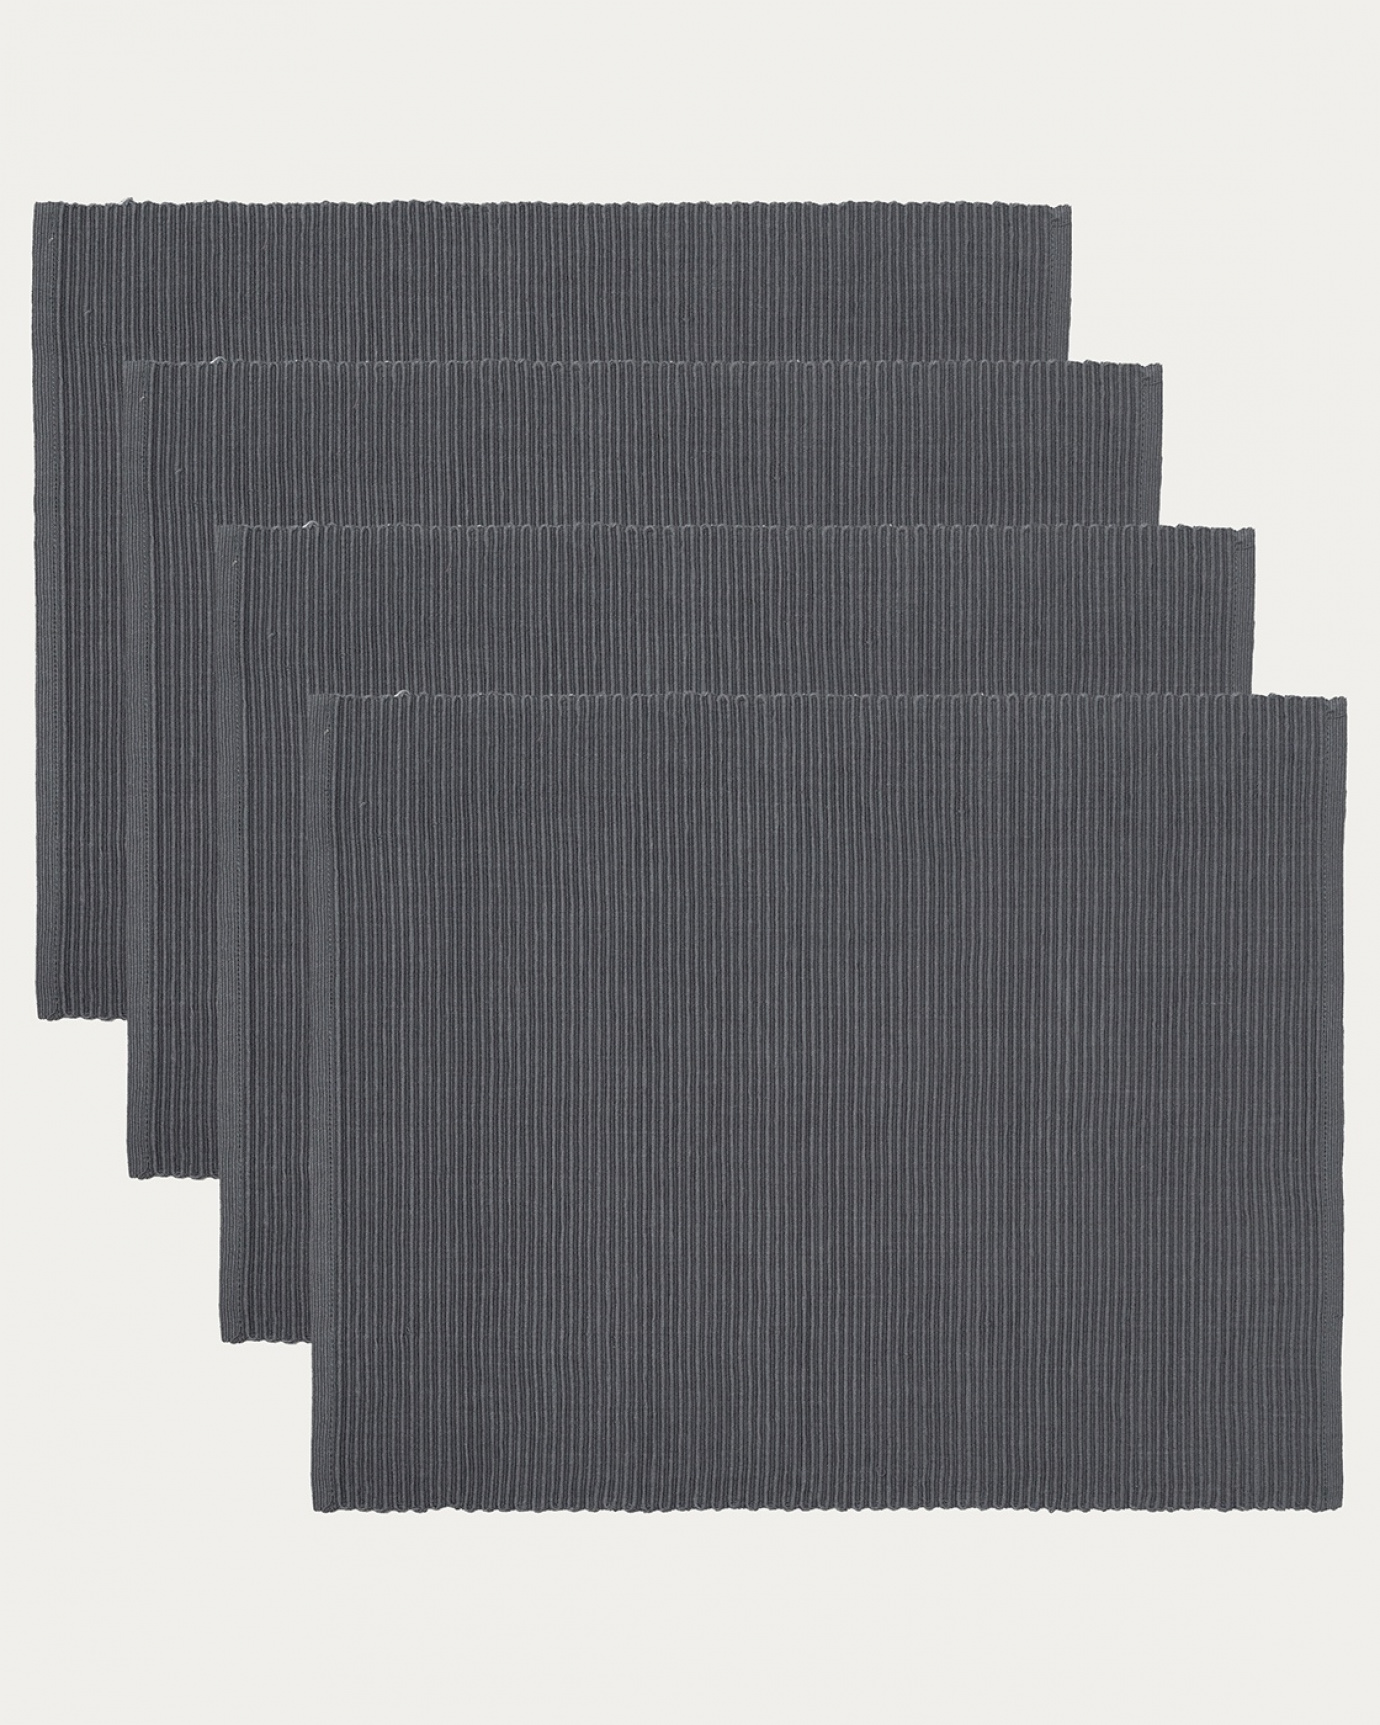 Immagine prodotto grigio granito tovaglietta UNI in morbido cotone a costine di qualità di LINUM DESIGN. Dimensioni 35x46 cm e venduto in 4-pezzi.